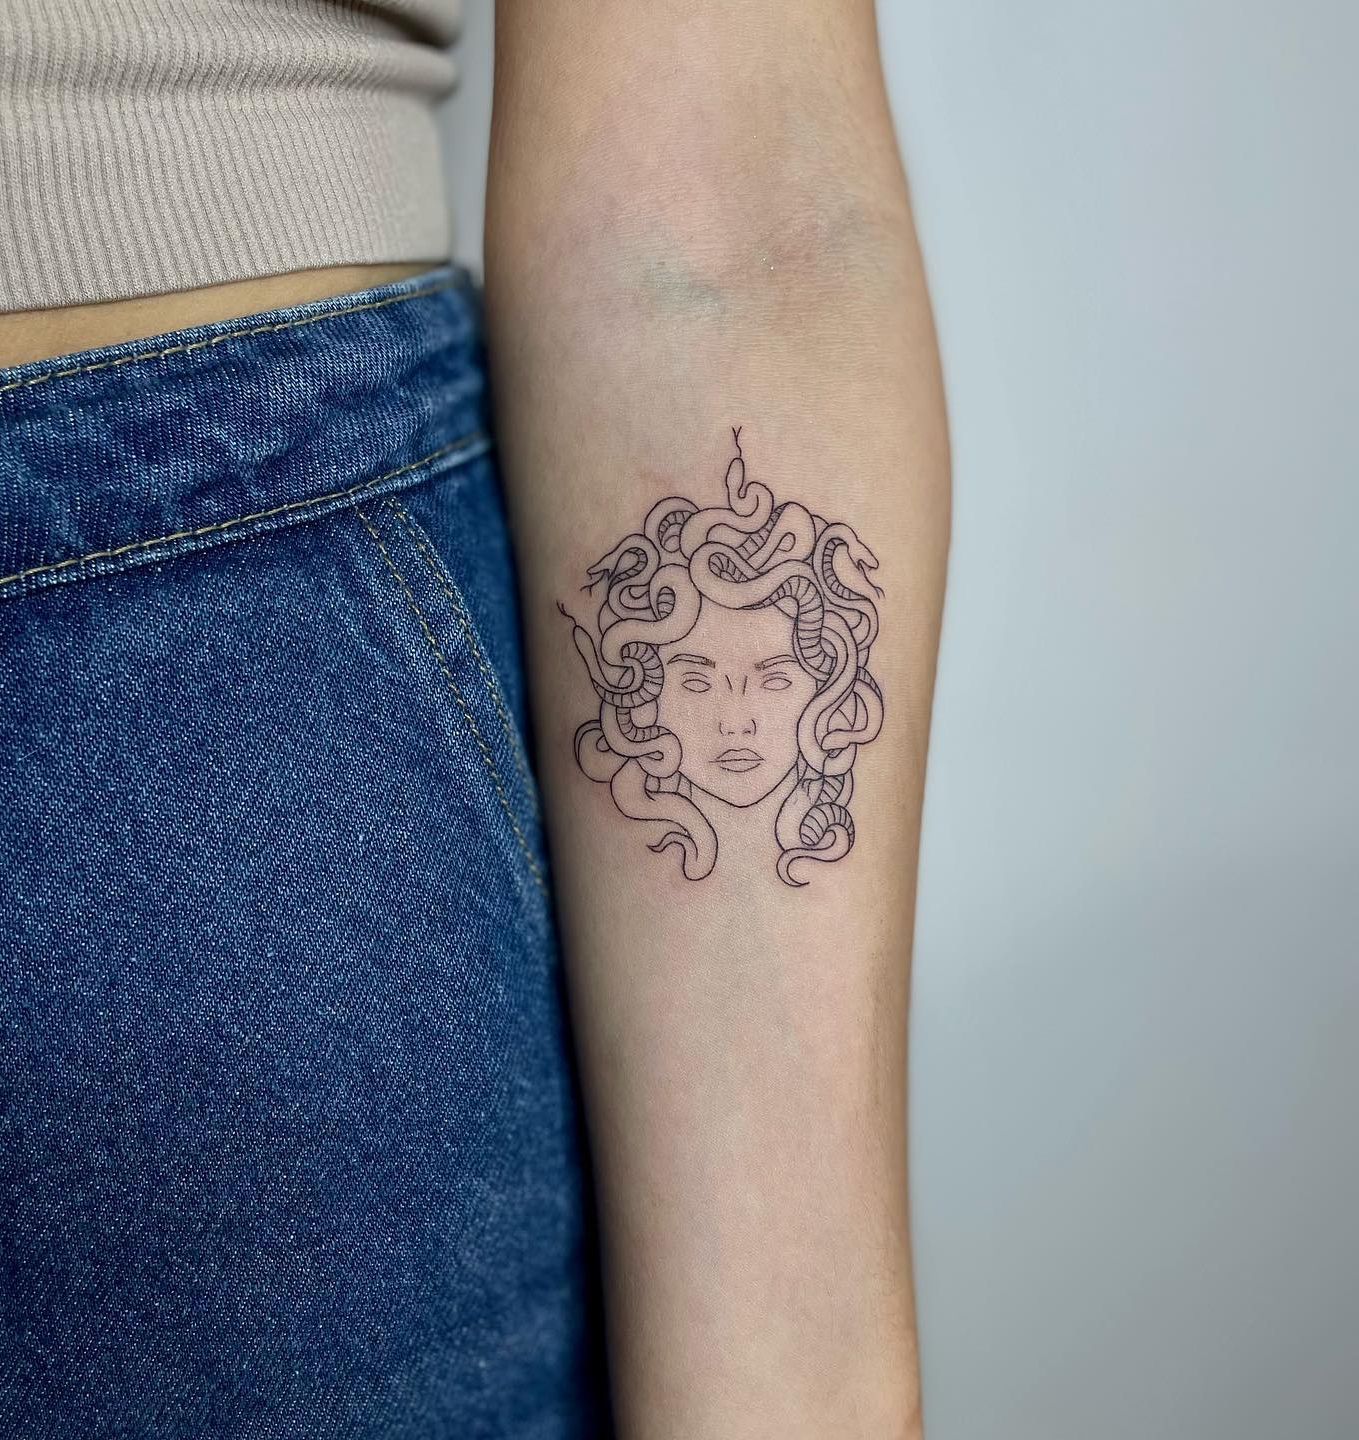 Tiny Medusa Tattoo on Arm